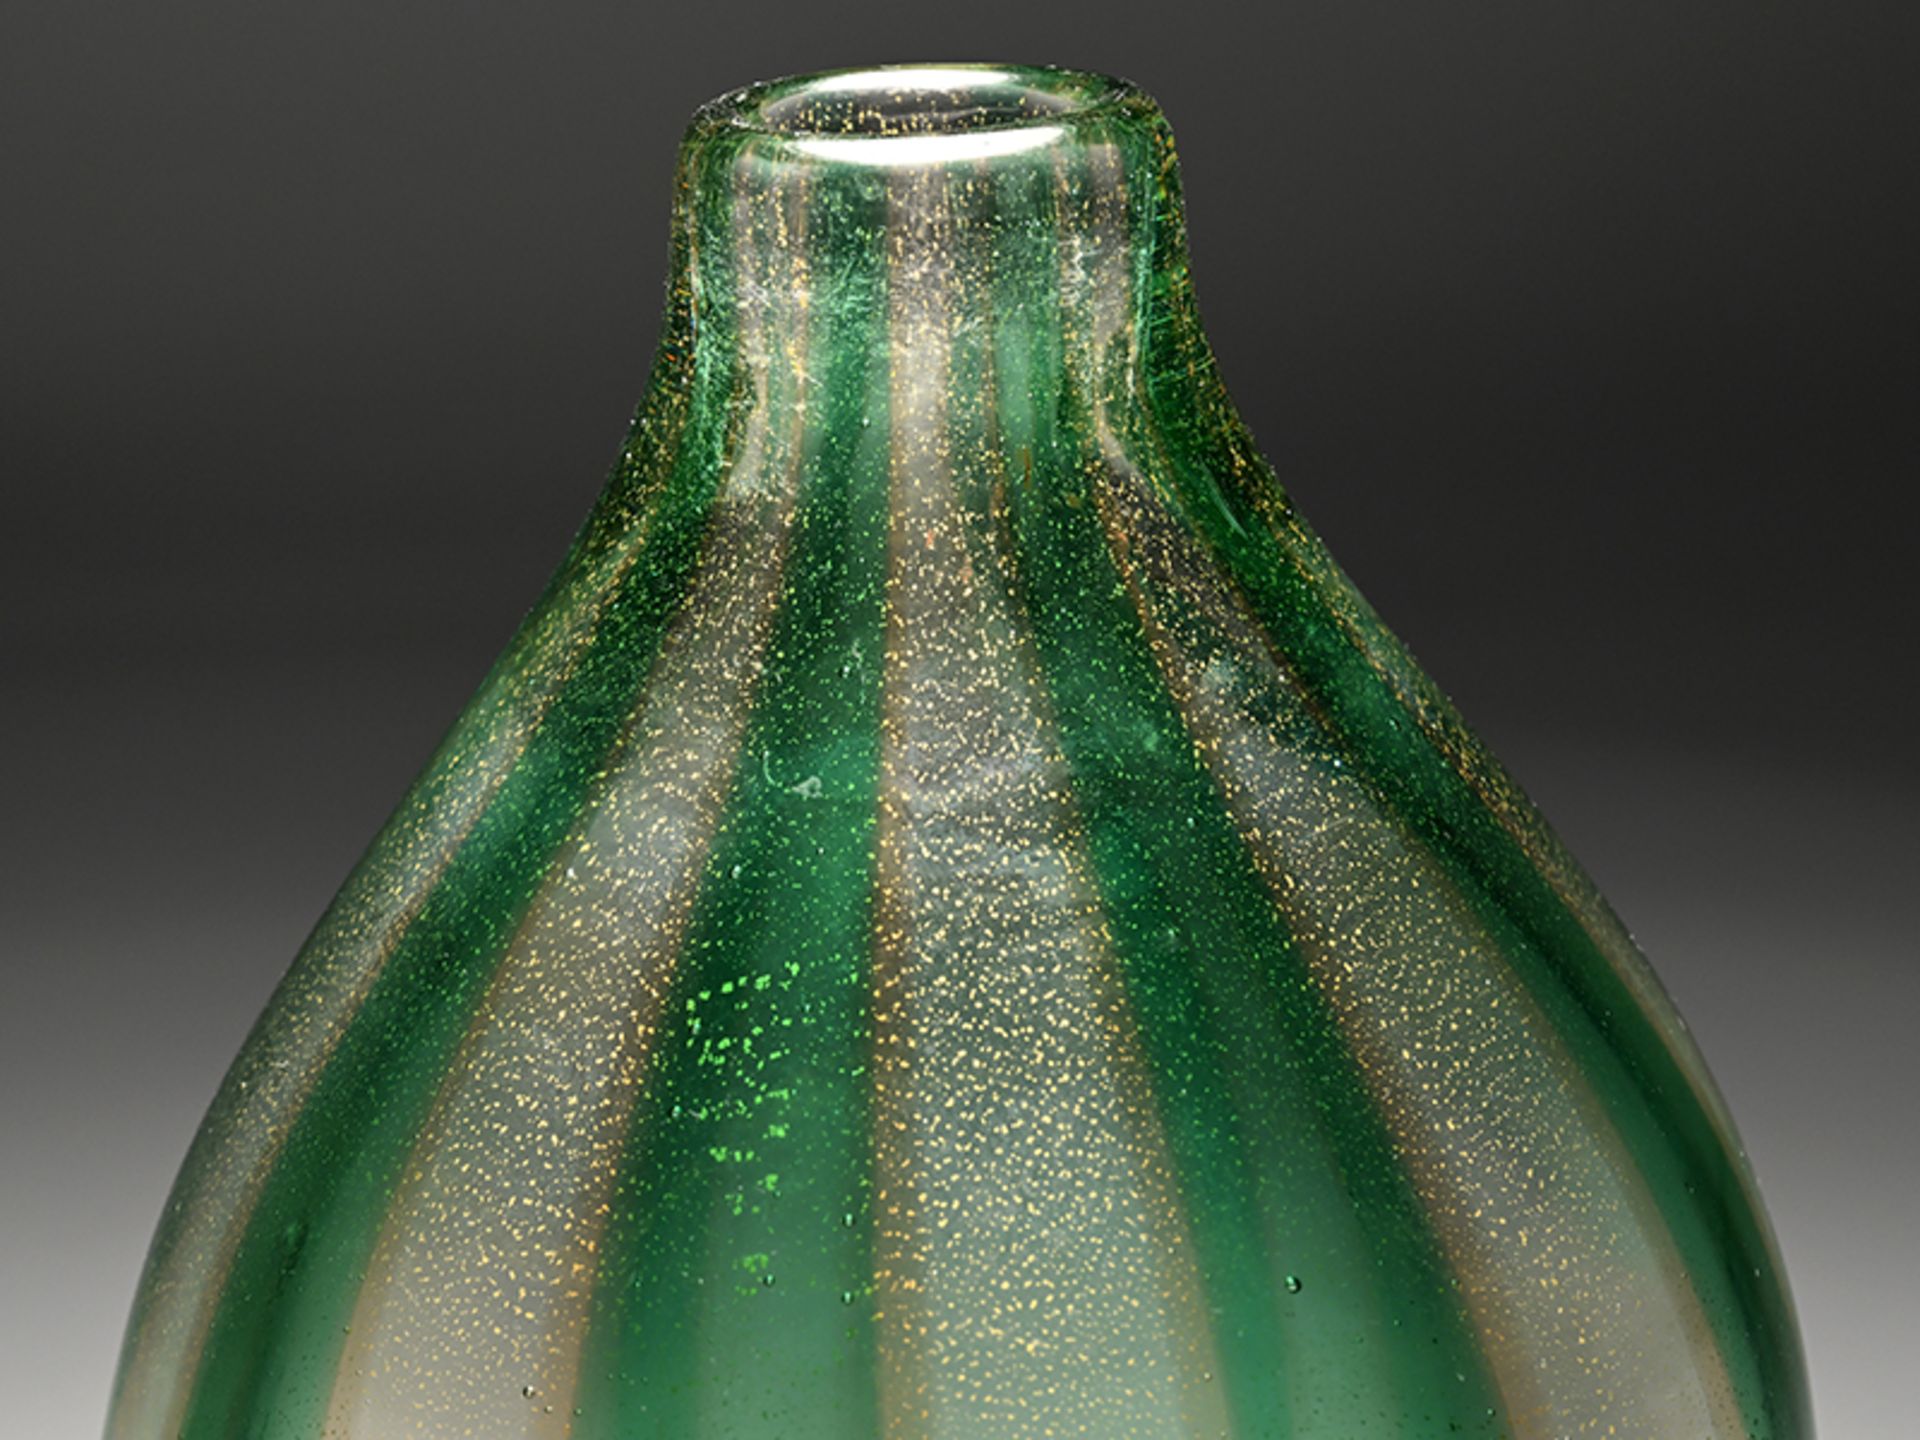 Vase mit grünem Streifendekor und Goldstaub, wohl Murano/Italien, Mitte 20. Jh. - Image 2 of 6